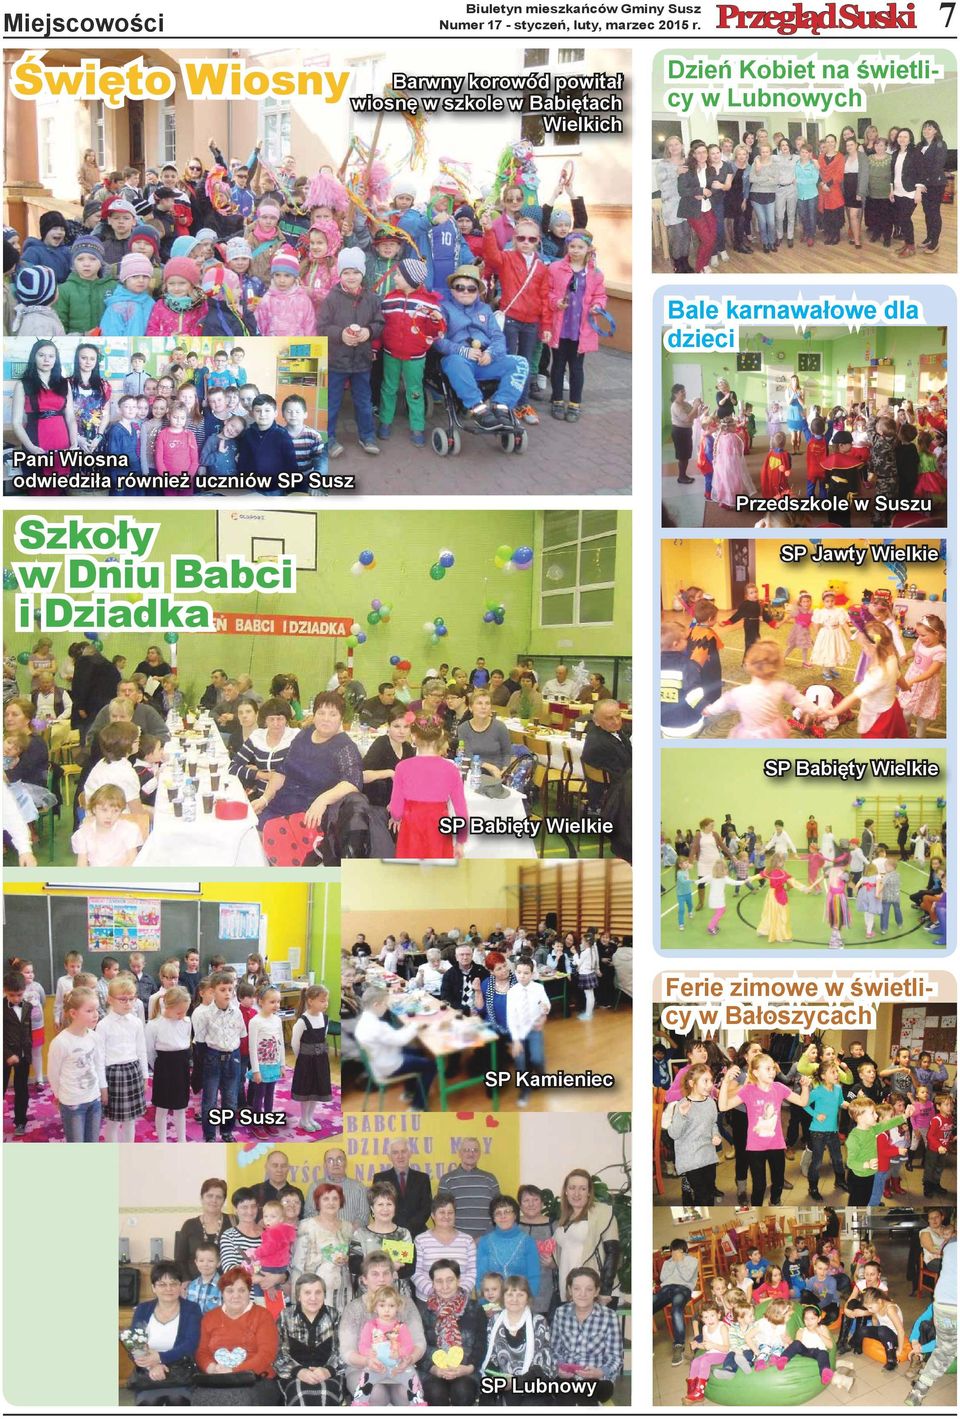 Bale karnawałowe dla dzieci Pani Wiosna odwiedziła również uczniów SP Susz Szkoły w Dniu Babci i Dziadka Przedszkole